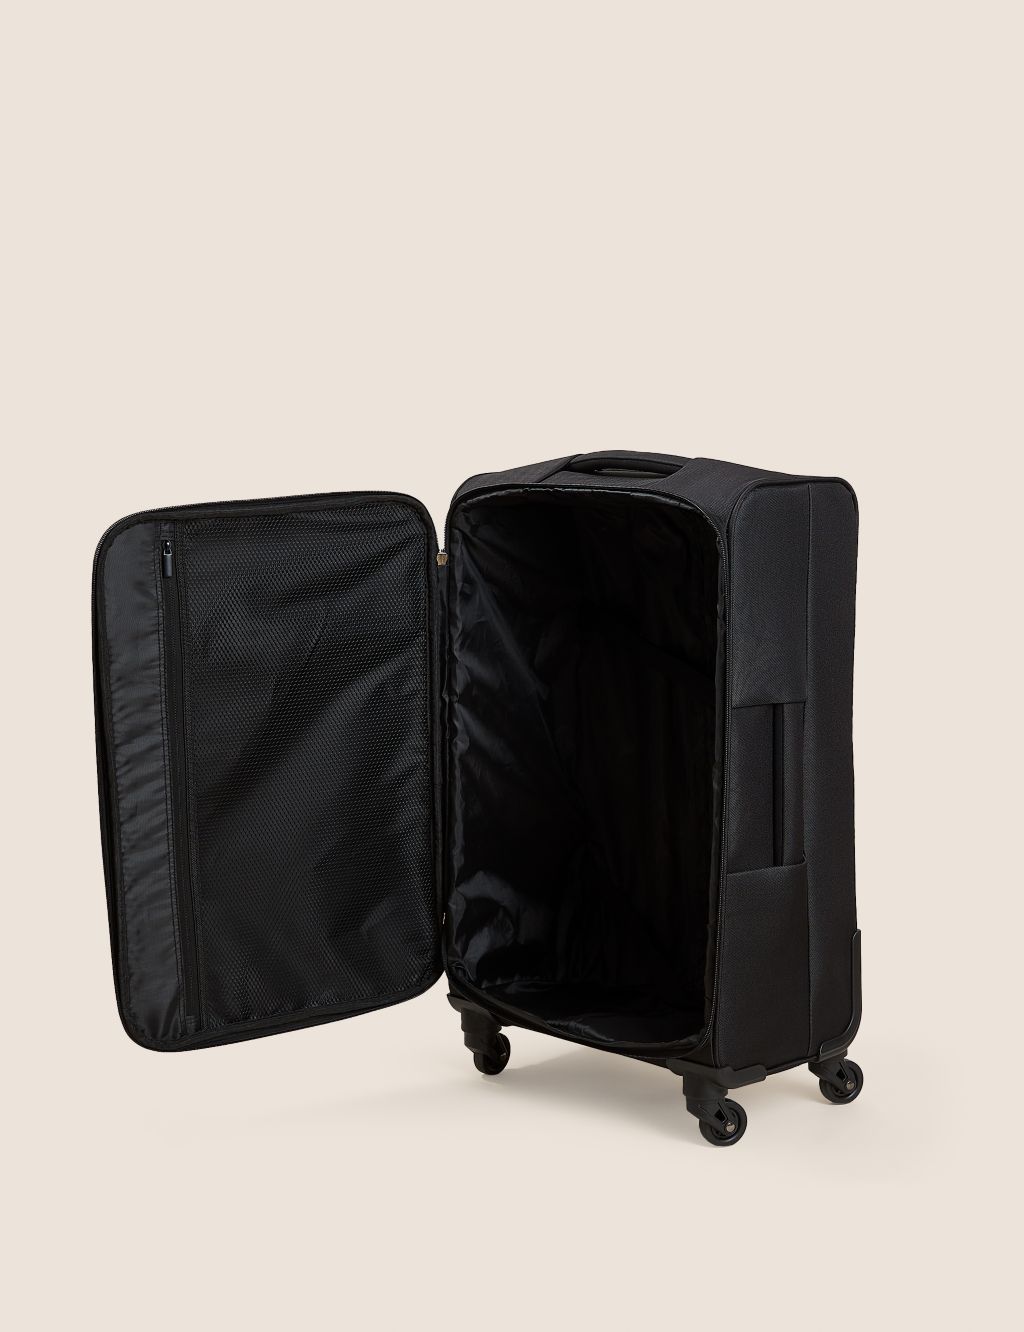 Palma 4 Wheel Soft Medium Suitcase image 6